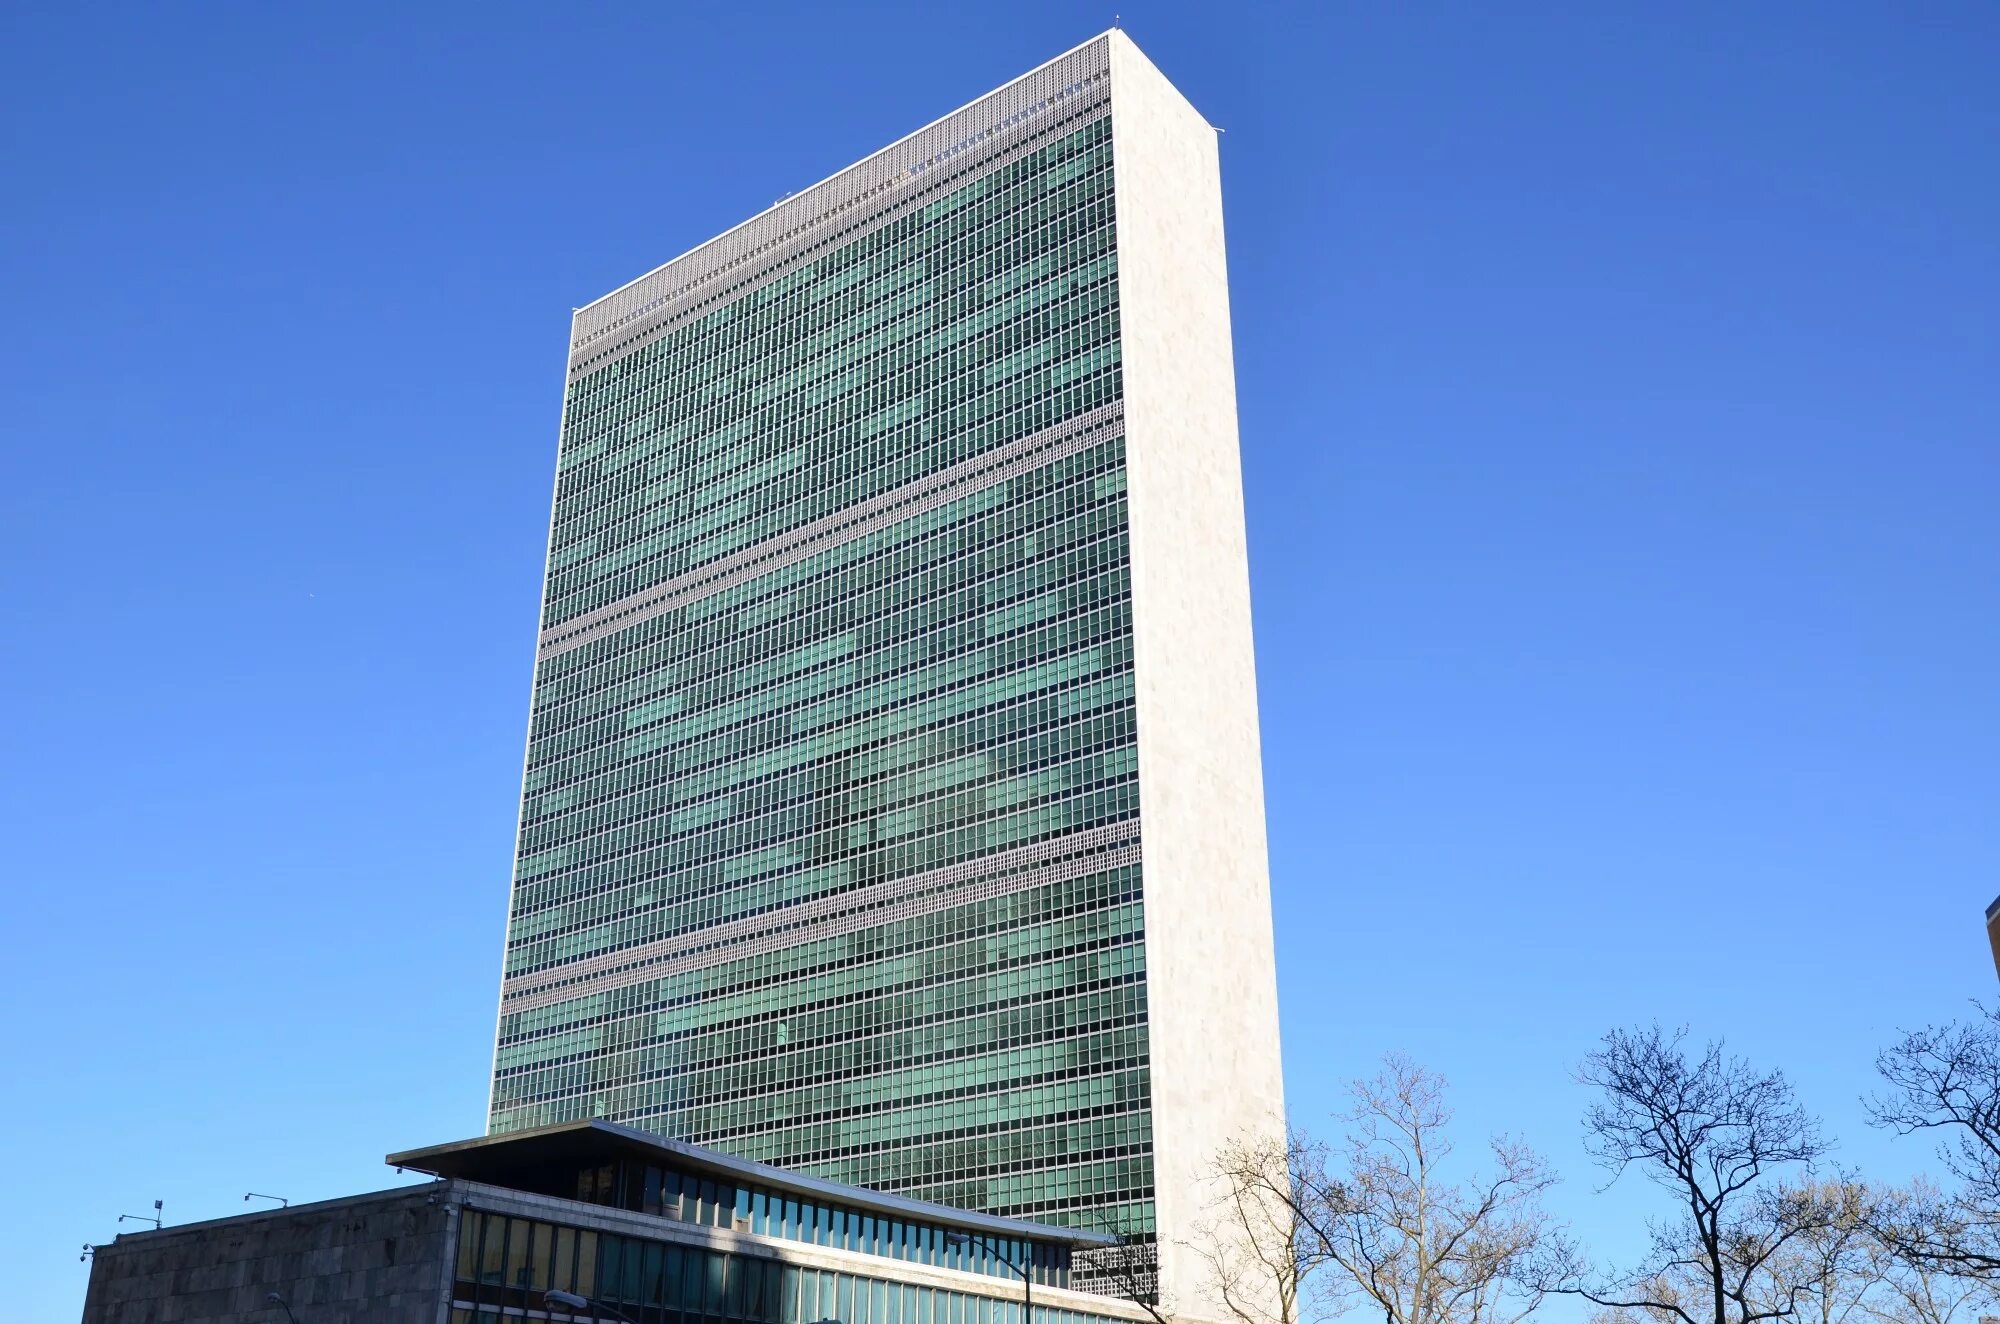 Город штаб оон. Штаб-квартира ООН В Нью-Йорке. Здание ООН В Нью-Йорке. Здание ООН В Нью-Йорке, арх. у. Гаррисон и Ле Корбюзье. Здание ООН В Нью-Йорке по проекту Ле Корбюзье.